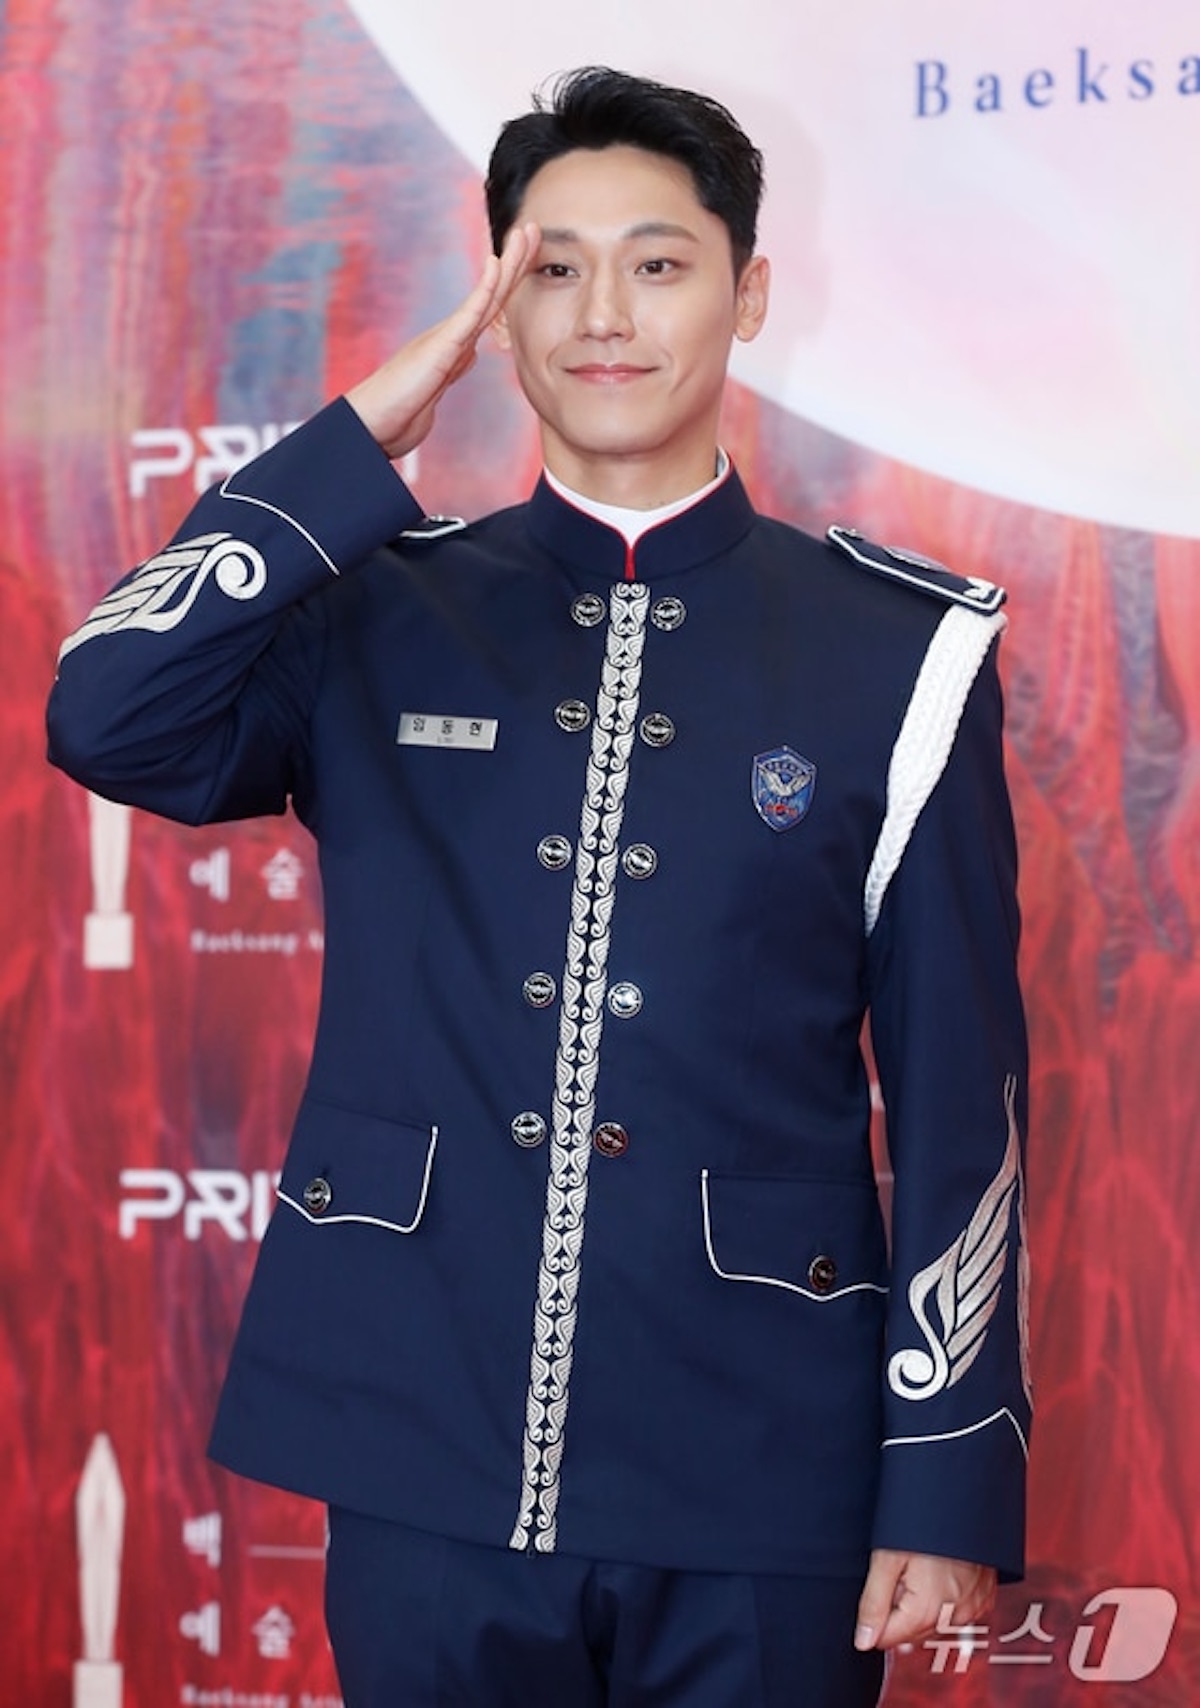 Lee Do Hyun gây chú ý khi diện quân phục không quân. Theo News1 (Hàn Quốc), anh đang thực hiện nghĩa vụ quân sự nhưng được nghỉ phép để tham dự lễ trao giải lần này